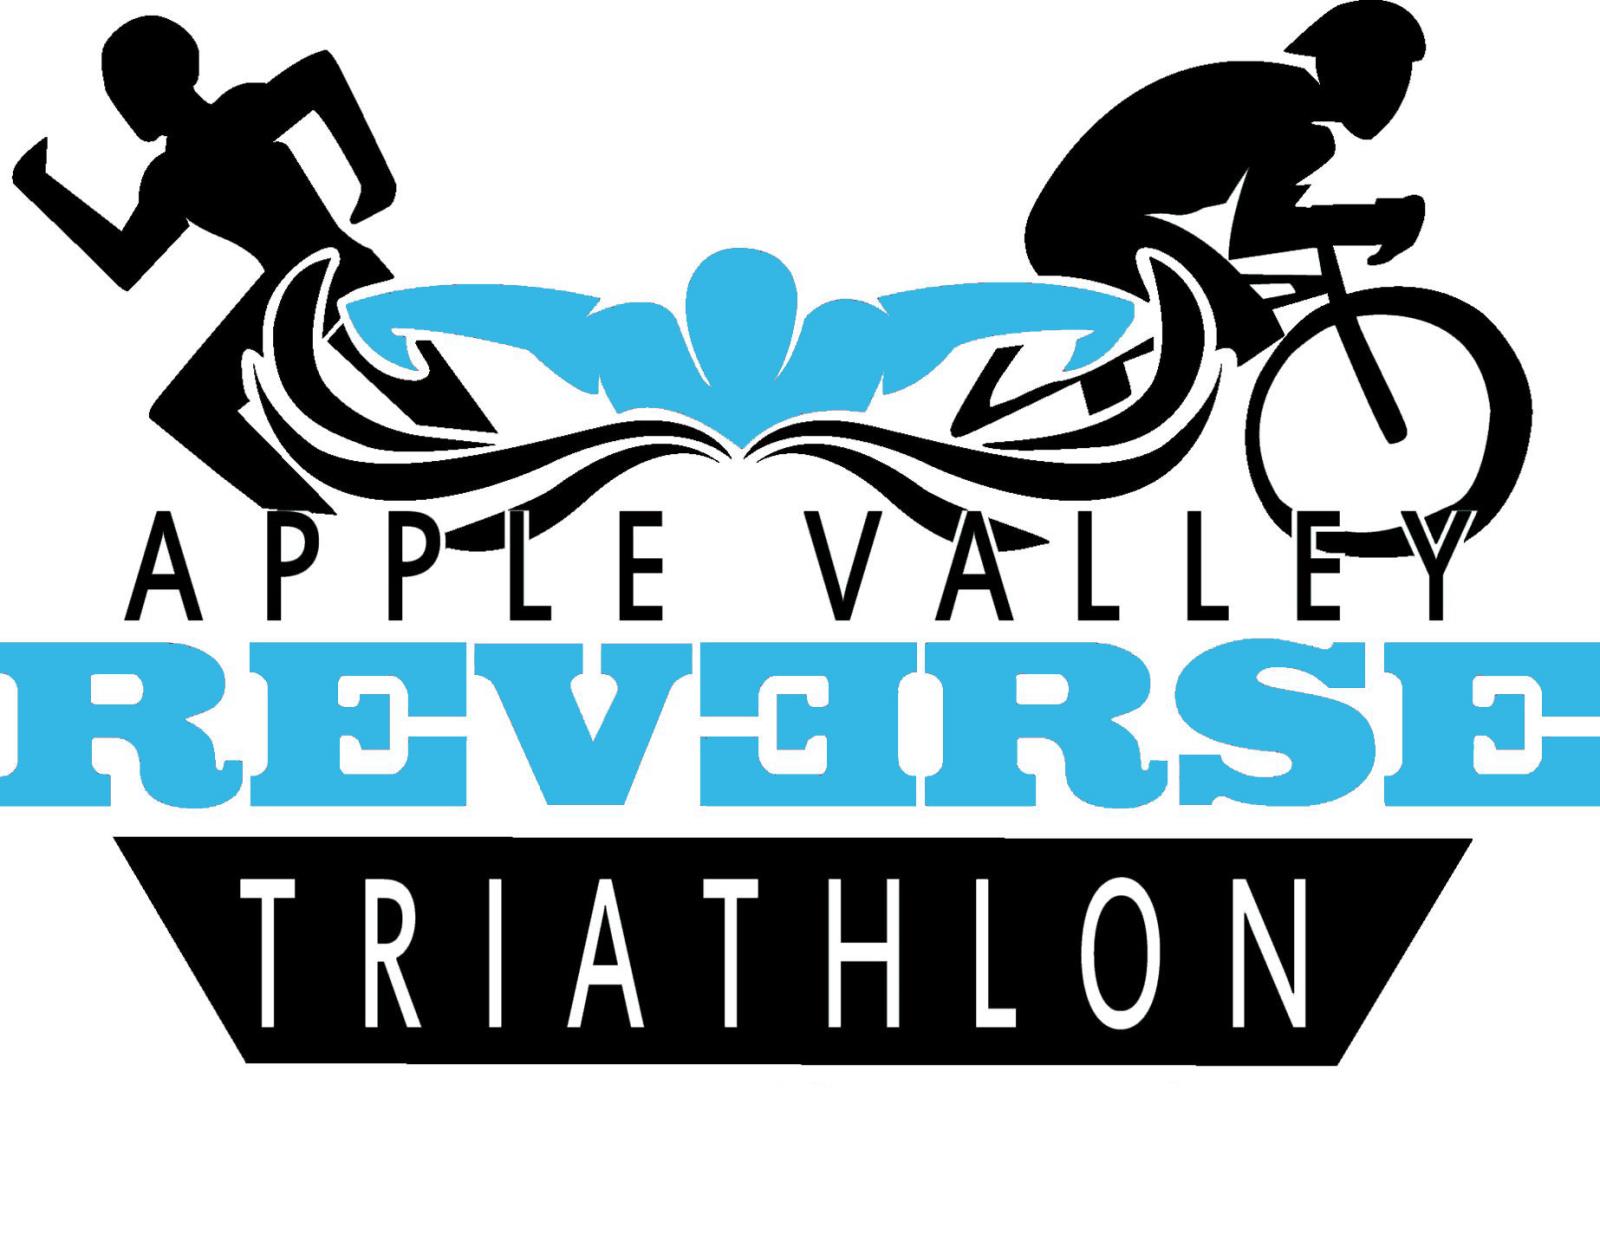 Apple Valley Reverse Triathlon Sept. 25th